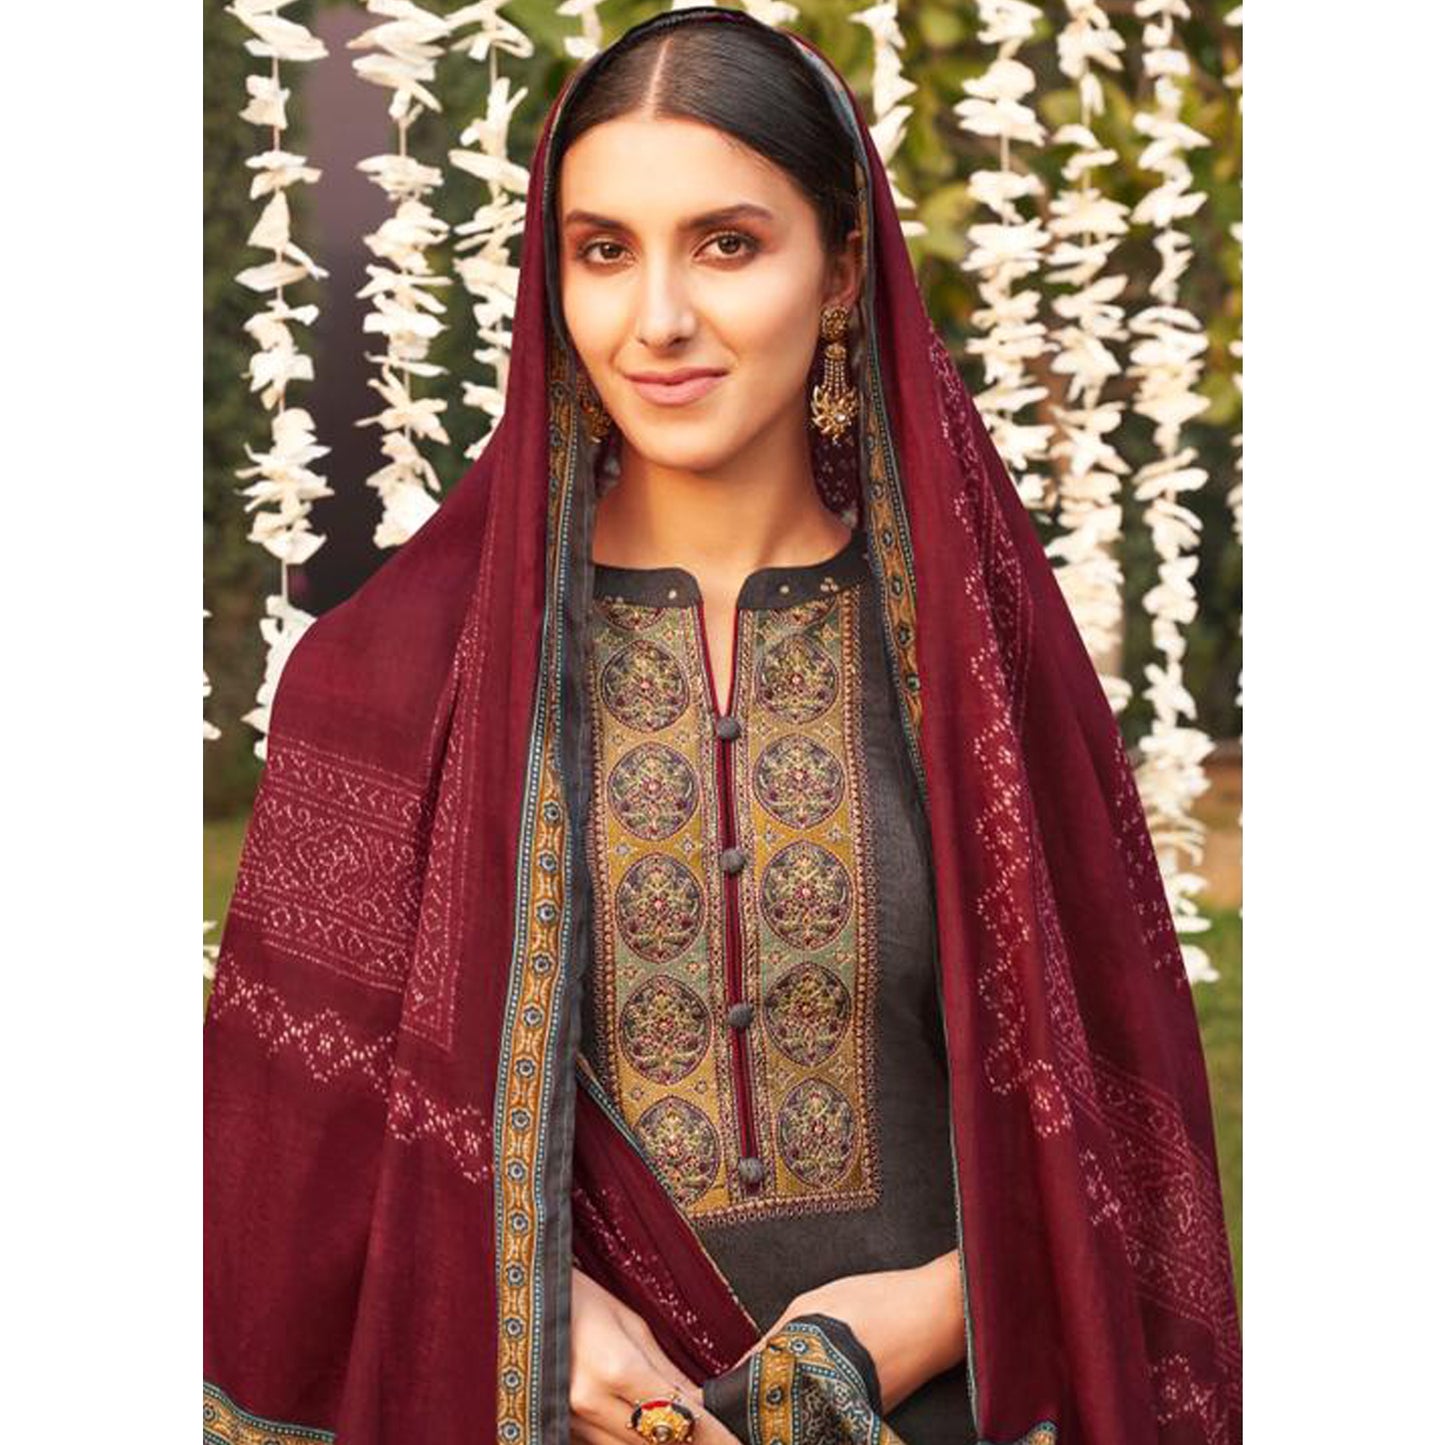 Rajasthani Jaipuri Royal Wedding Style Salwar Kameez with Bandhani Dupatta Suits